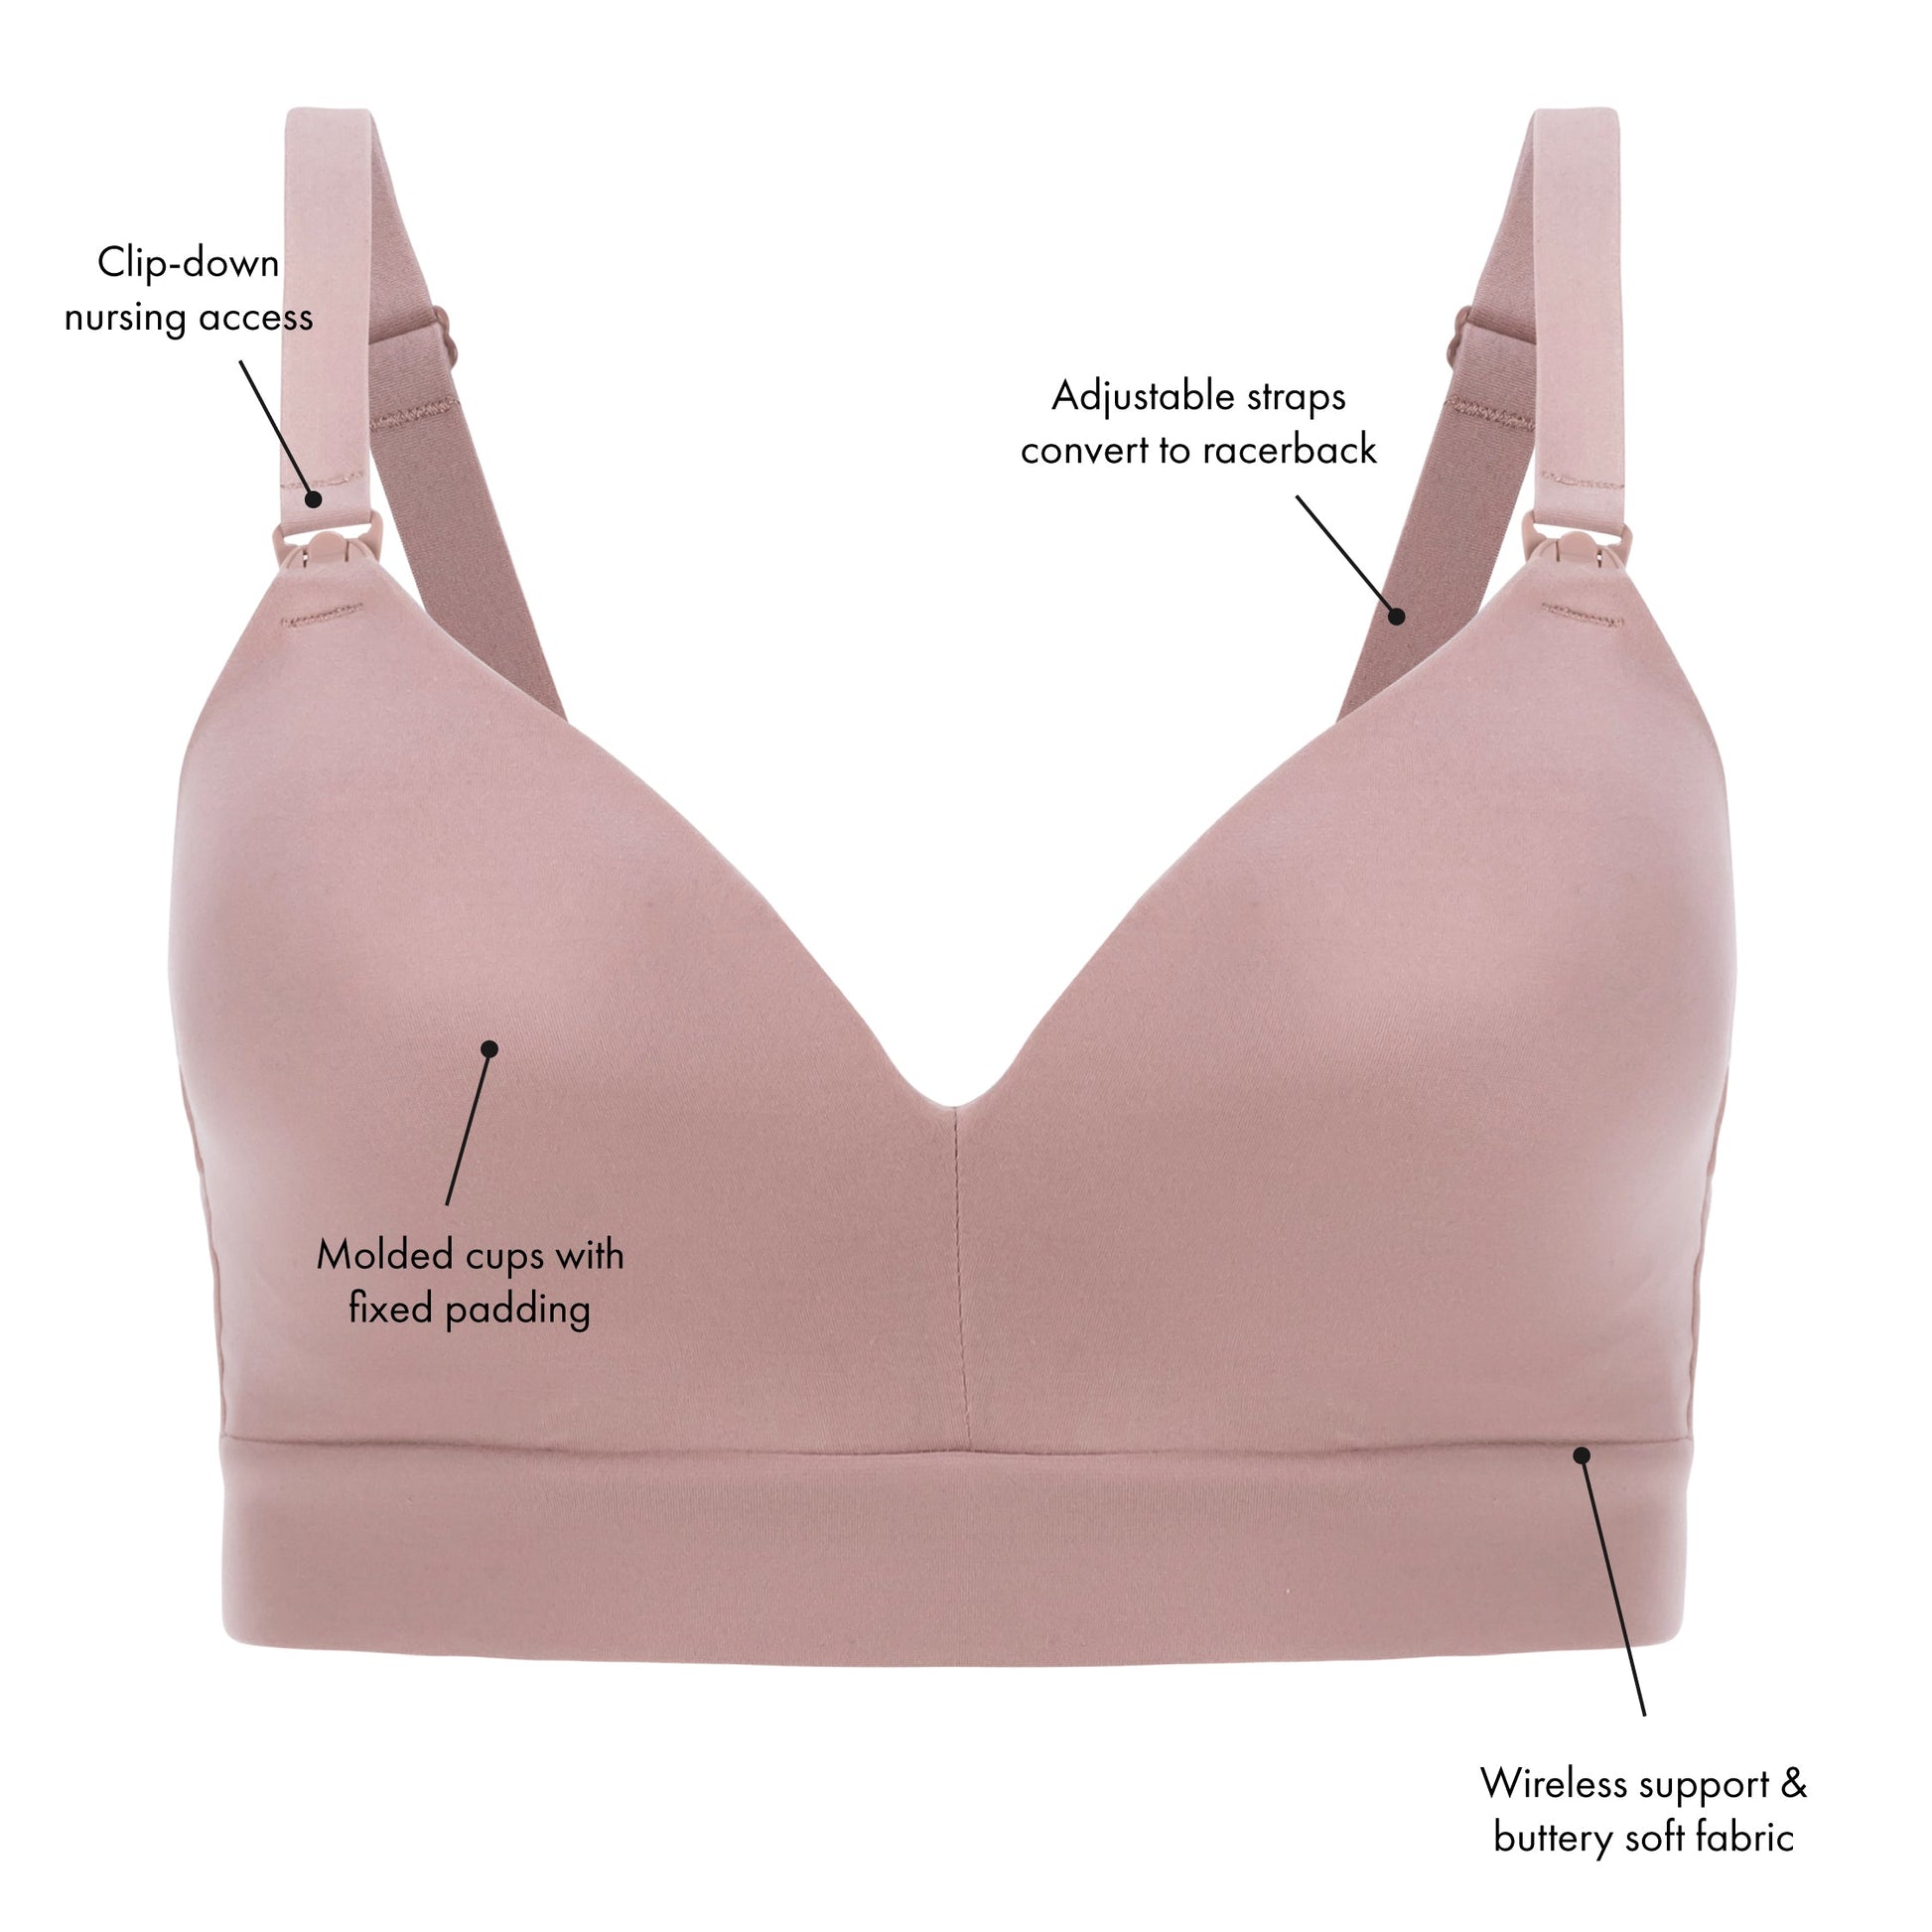 PINK Victoria's Secret, Intimates & Sleepwear, Nursing Bras 34dd